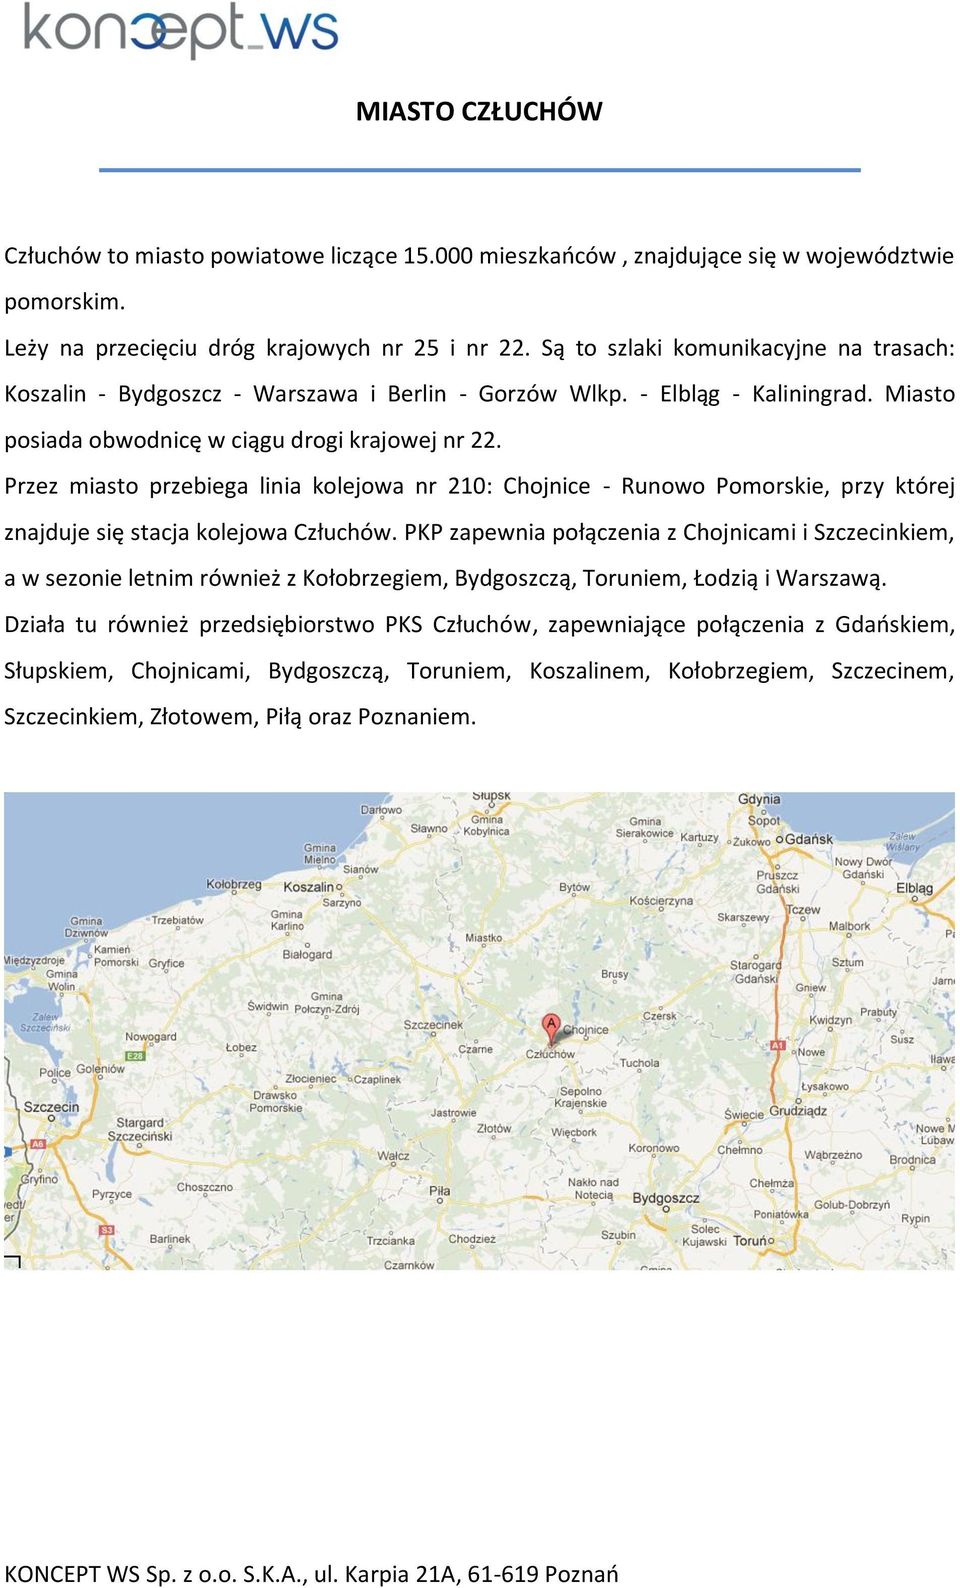 Przez miasto przebiega linia kolejowa nr 210: Chojnice - Runowo Pomorskie, przy której znajduje się stacja kolejowa Człuchów.